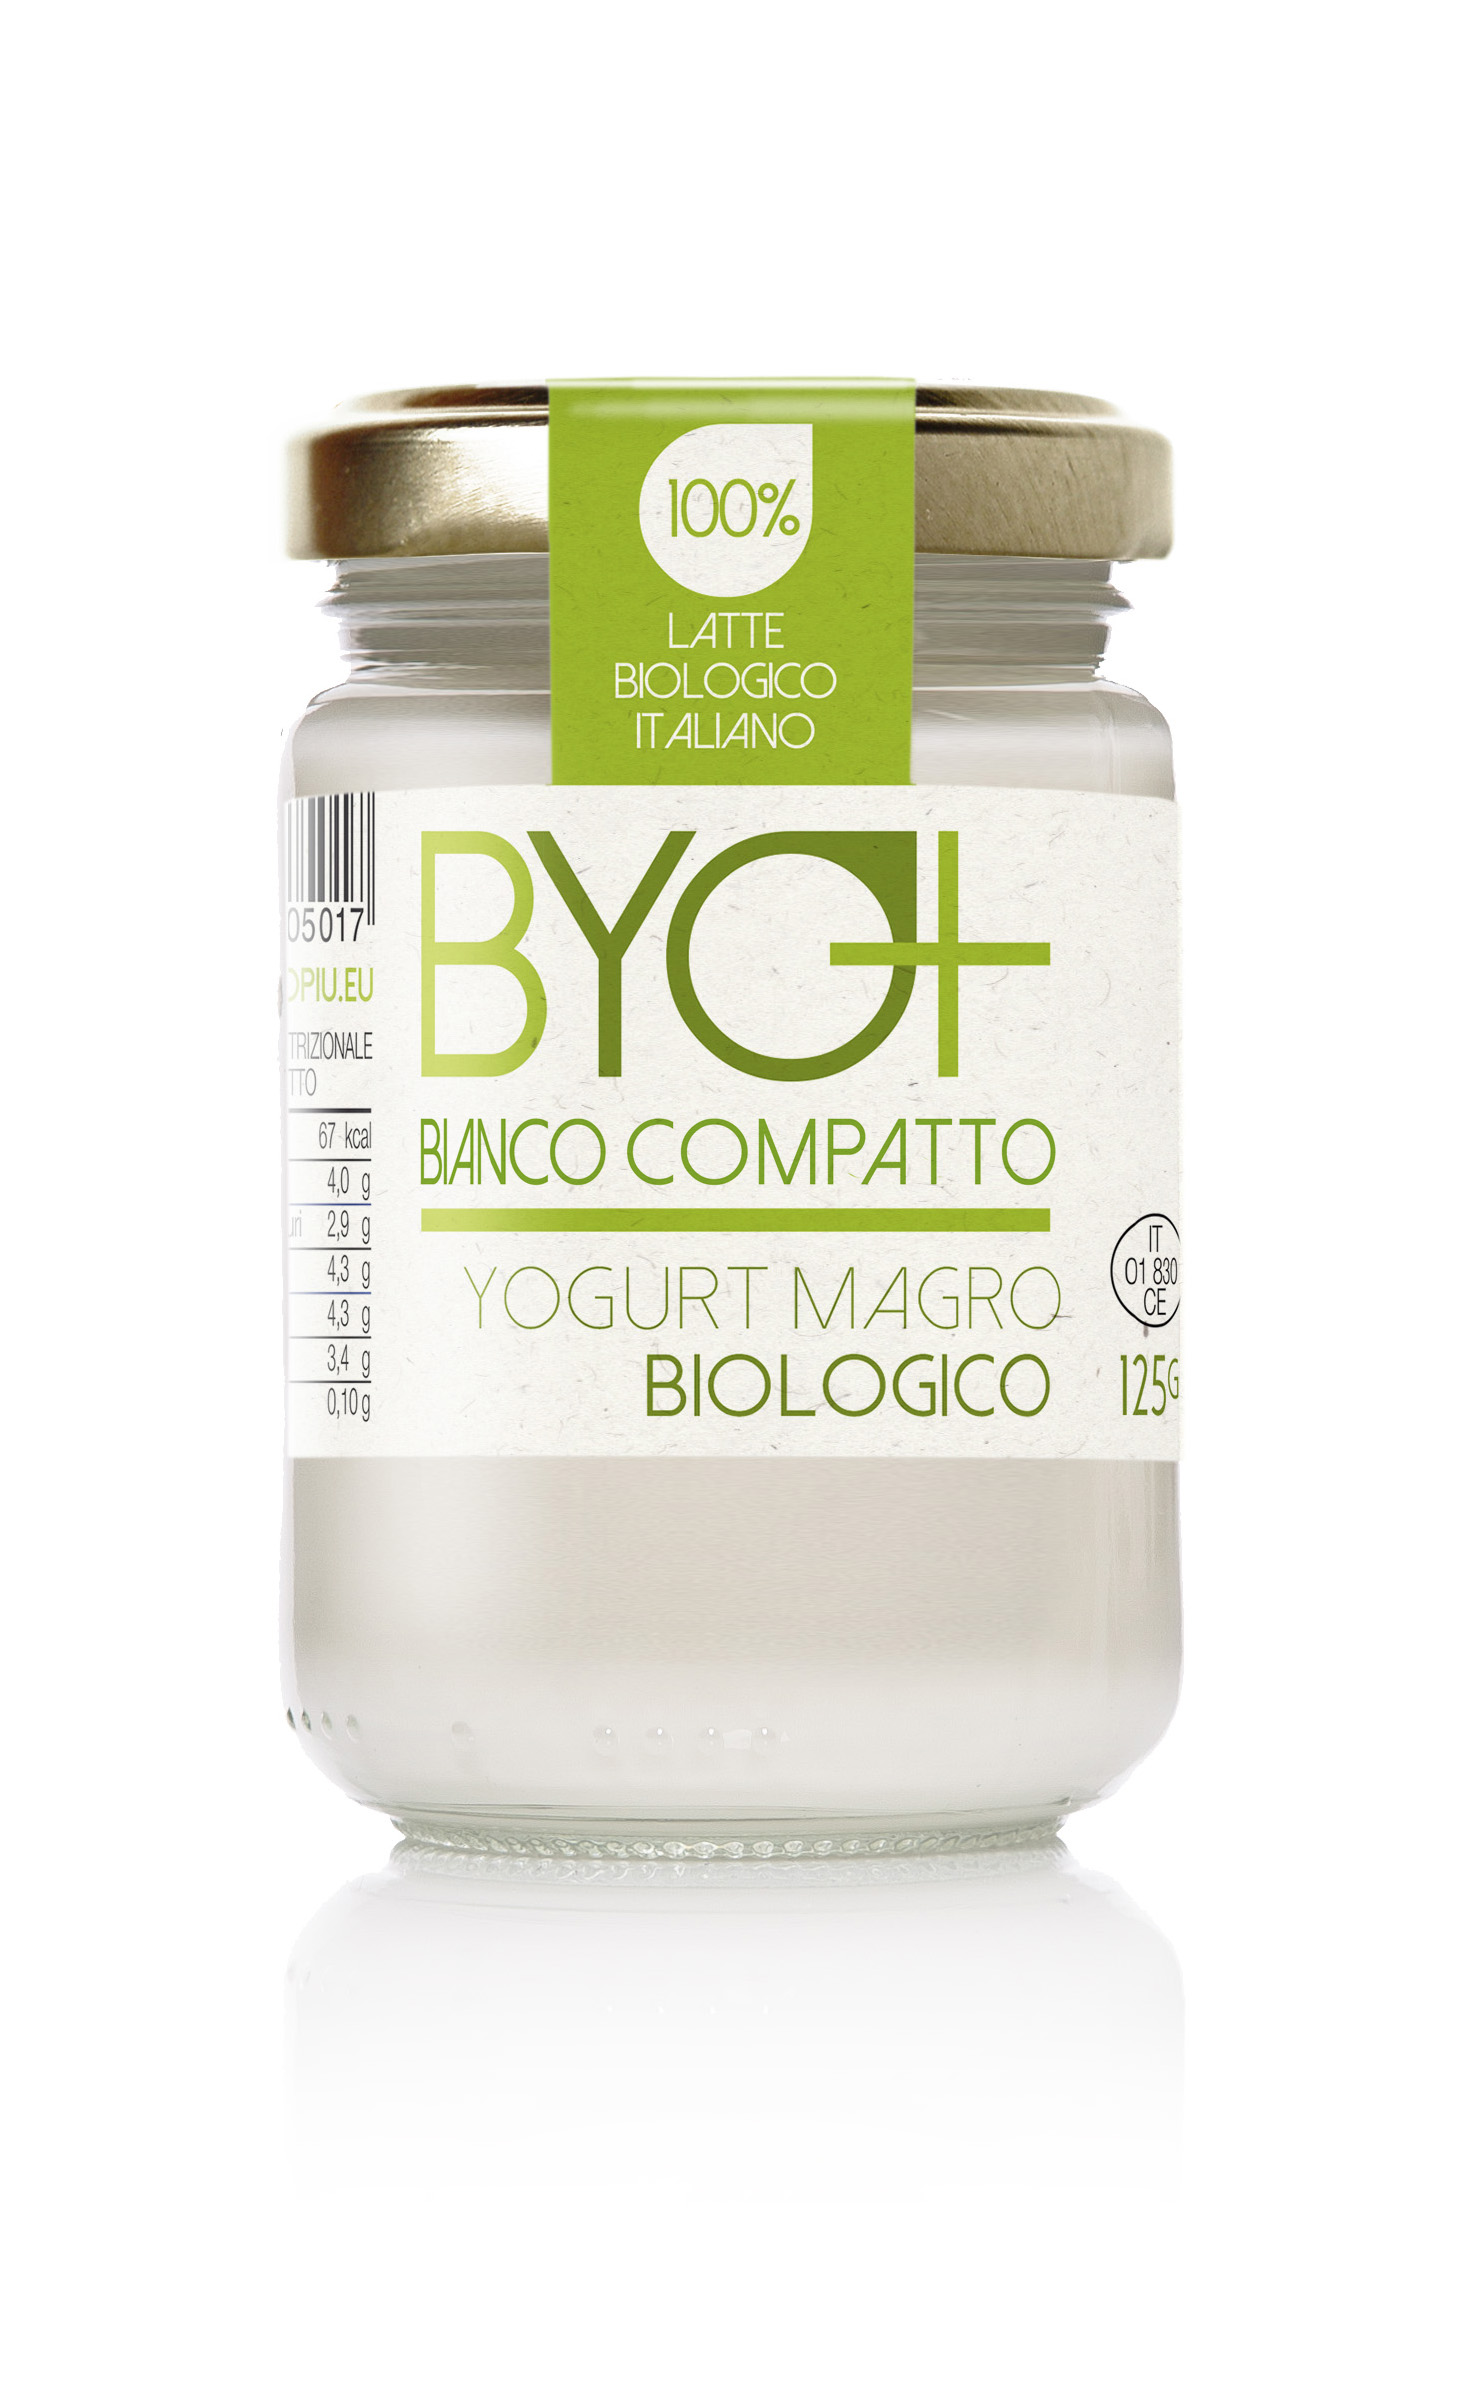 Byo+_Yogurt magro biologico 125g-bianco compatto